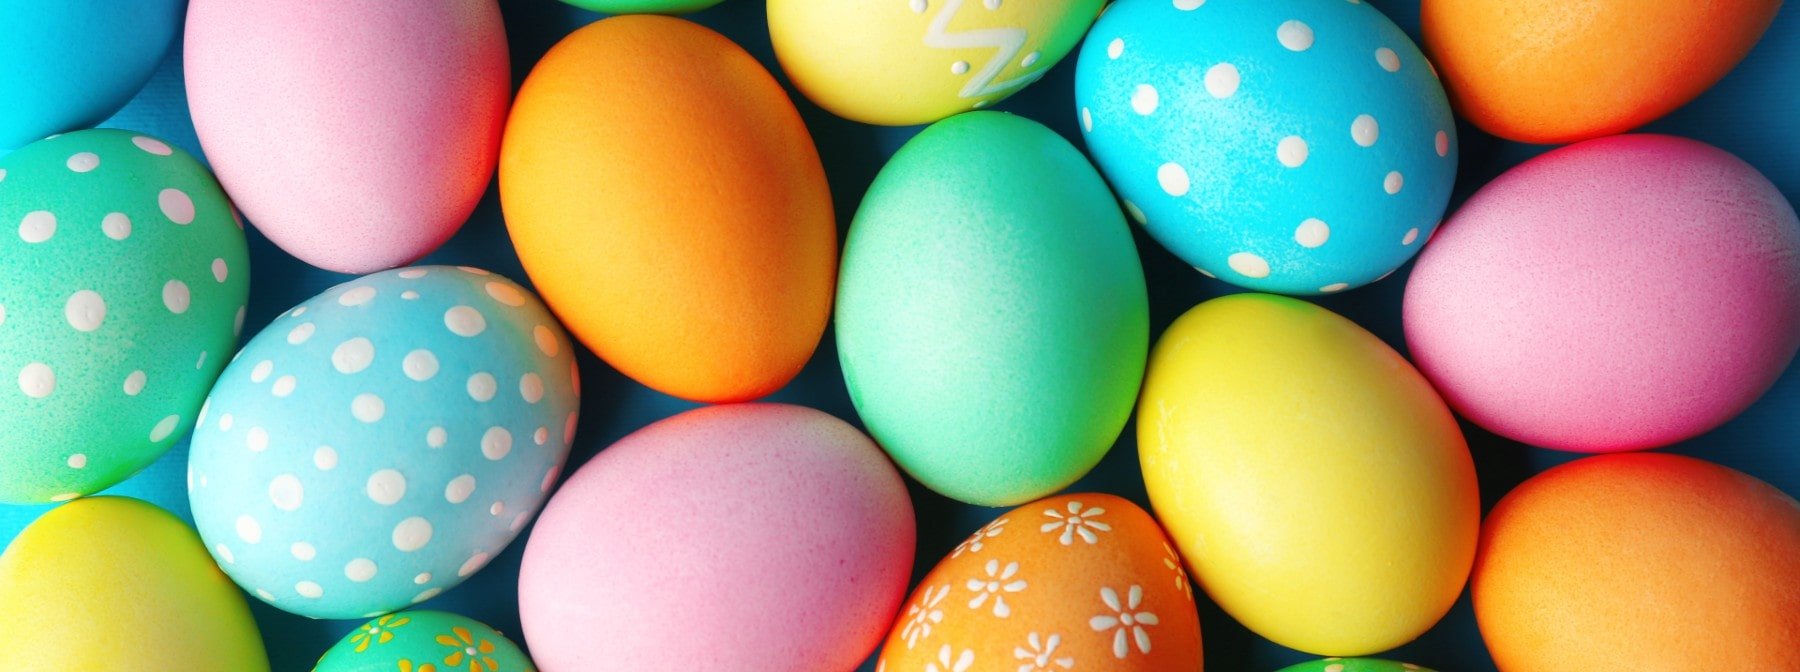 Fyll äggen med de här godbitarna i påsk